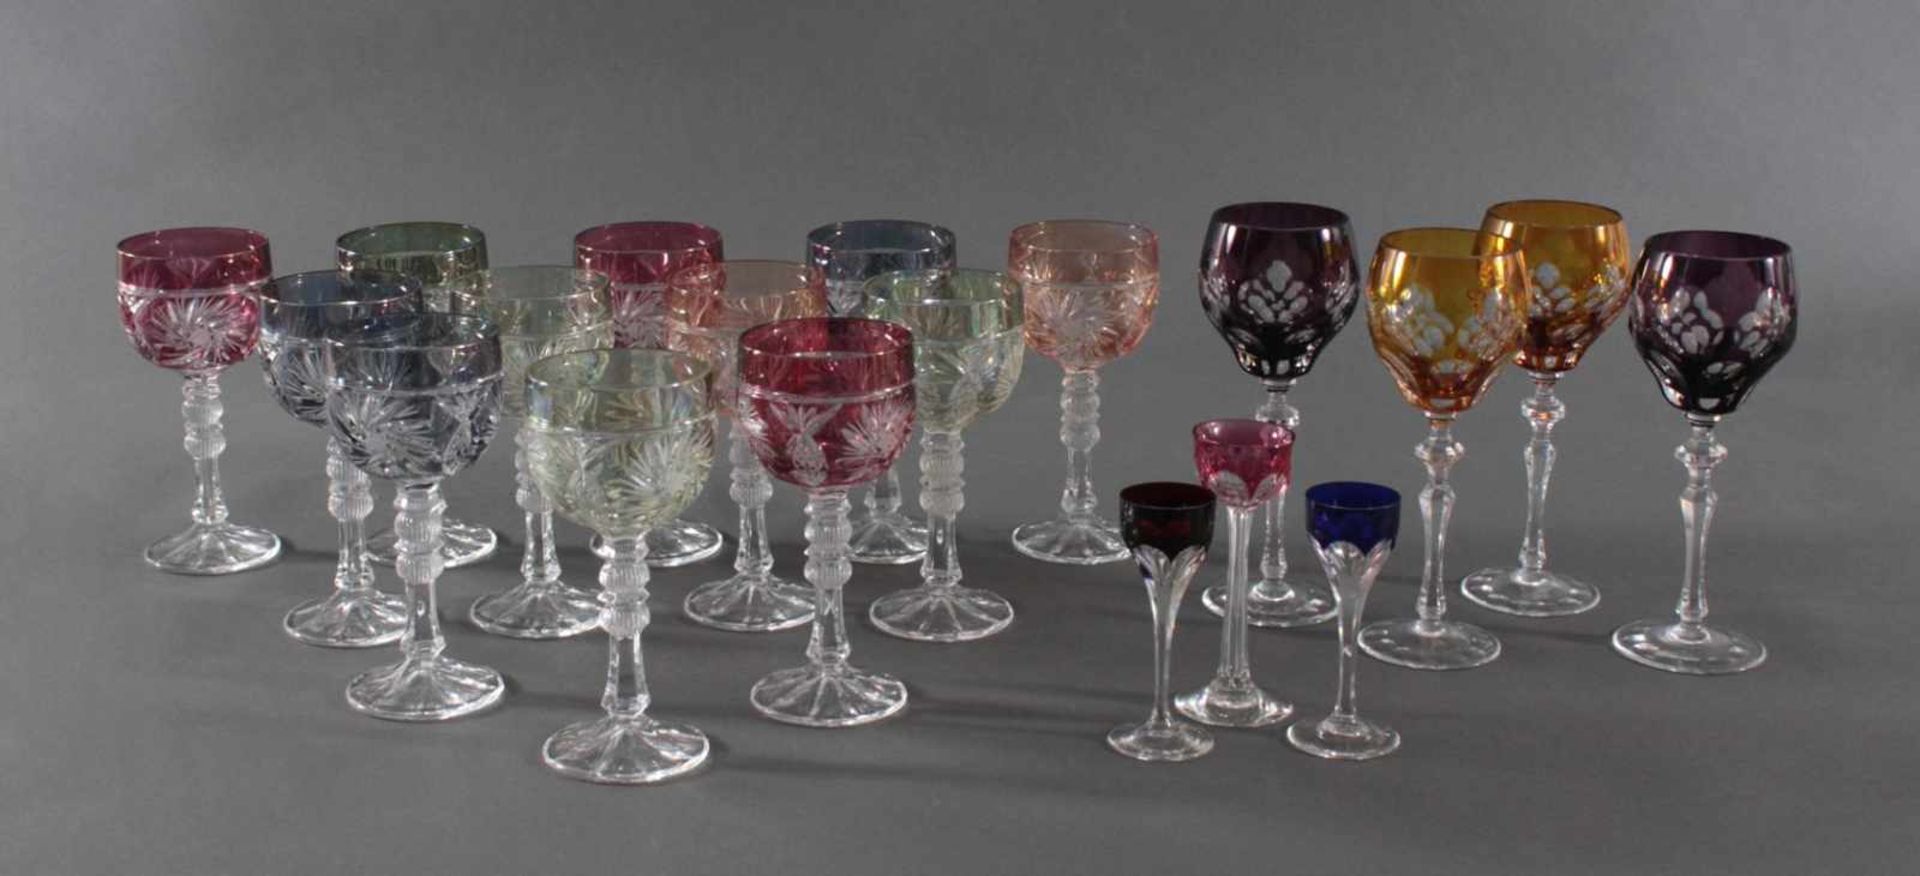 Römer Wein-/Likörgläser, 19 StückKristallglas, unterschiedliche Formen, Farben und Dekore. 12